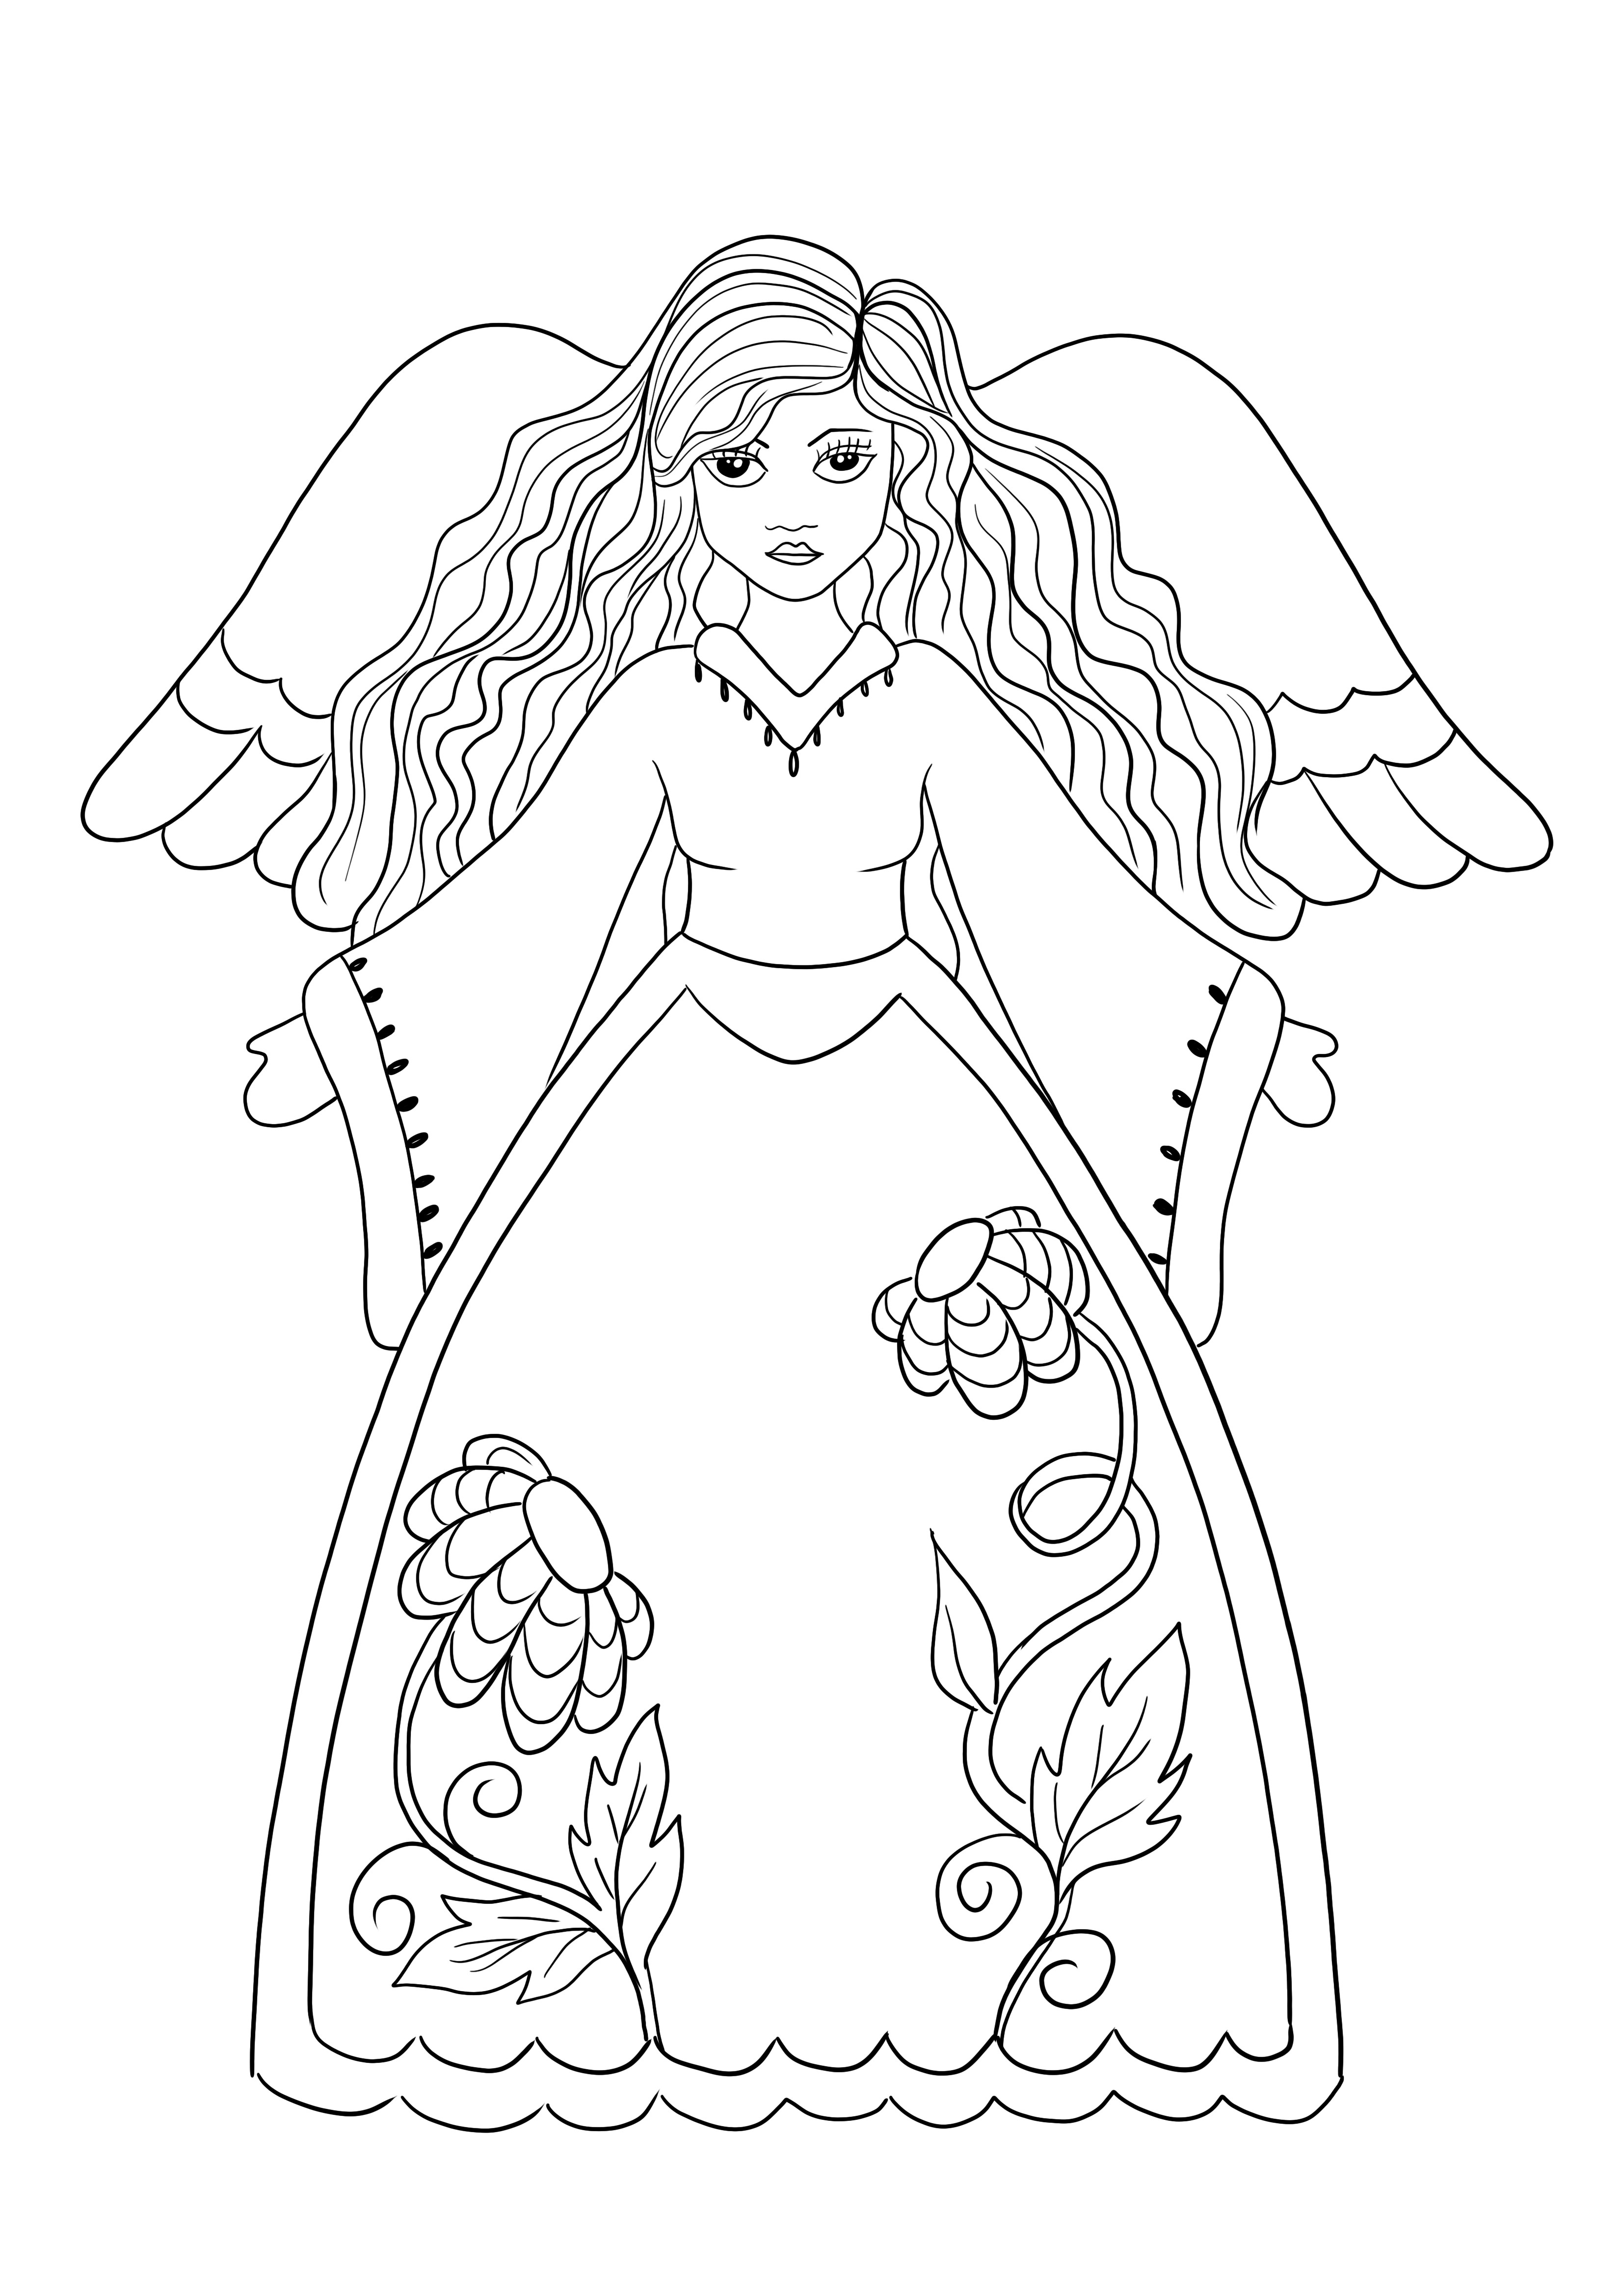 Dibujo de Hada con alas para colorear para imprimir gratis